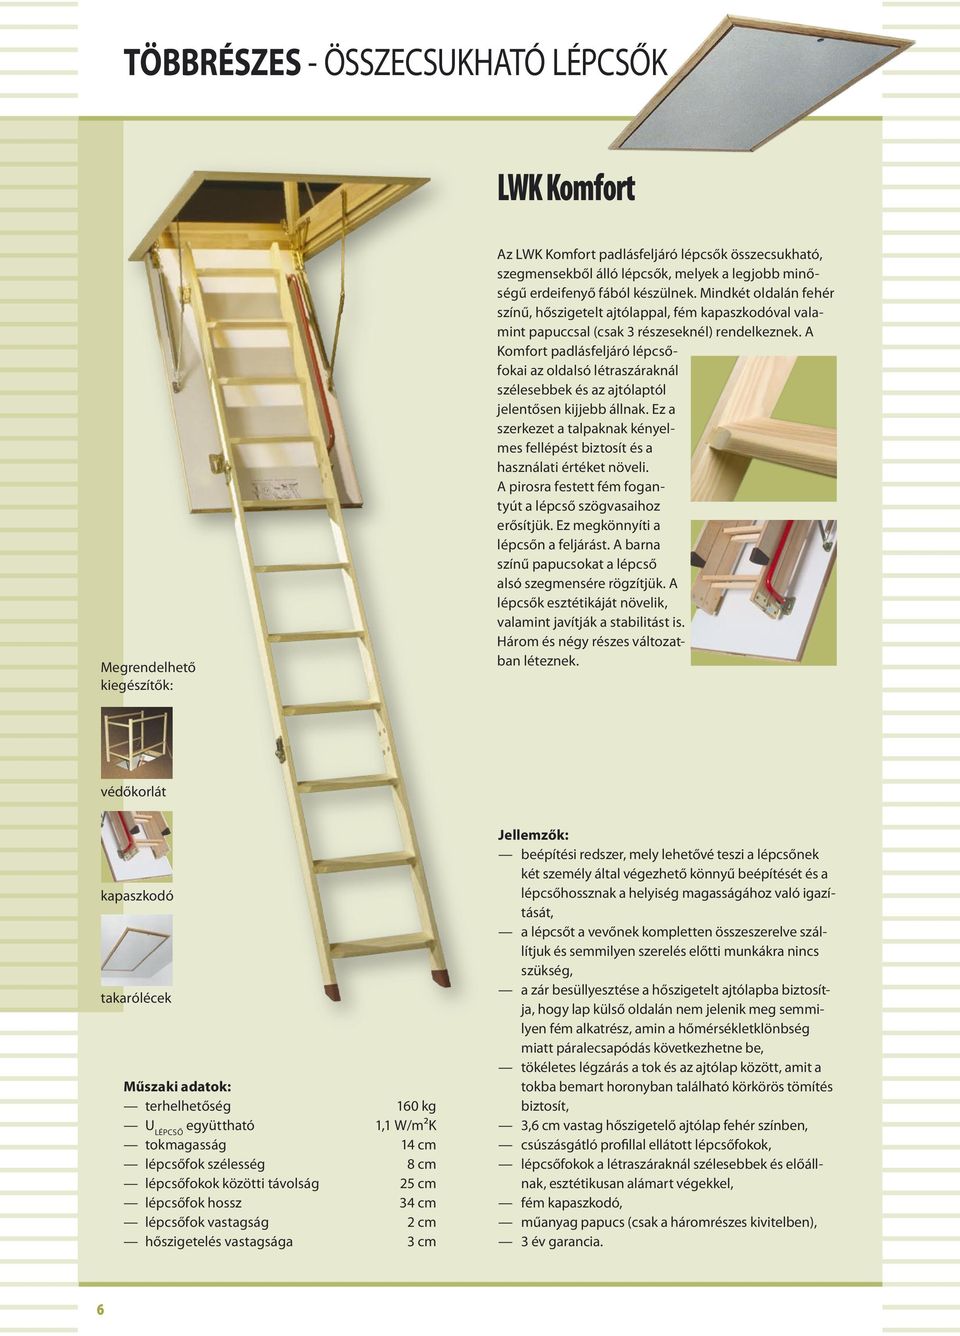 A Komfort padlásfeljáró lépcsőfokai az oldalsó létraszáraknál szélesebbek és az ajtólaptól jelentősen kijjebb állnak.